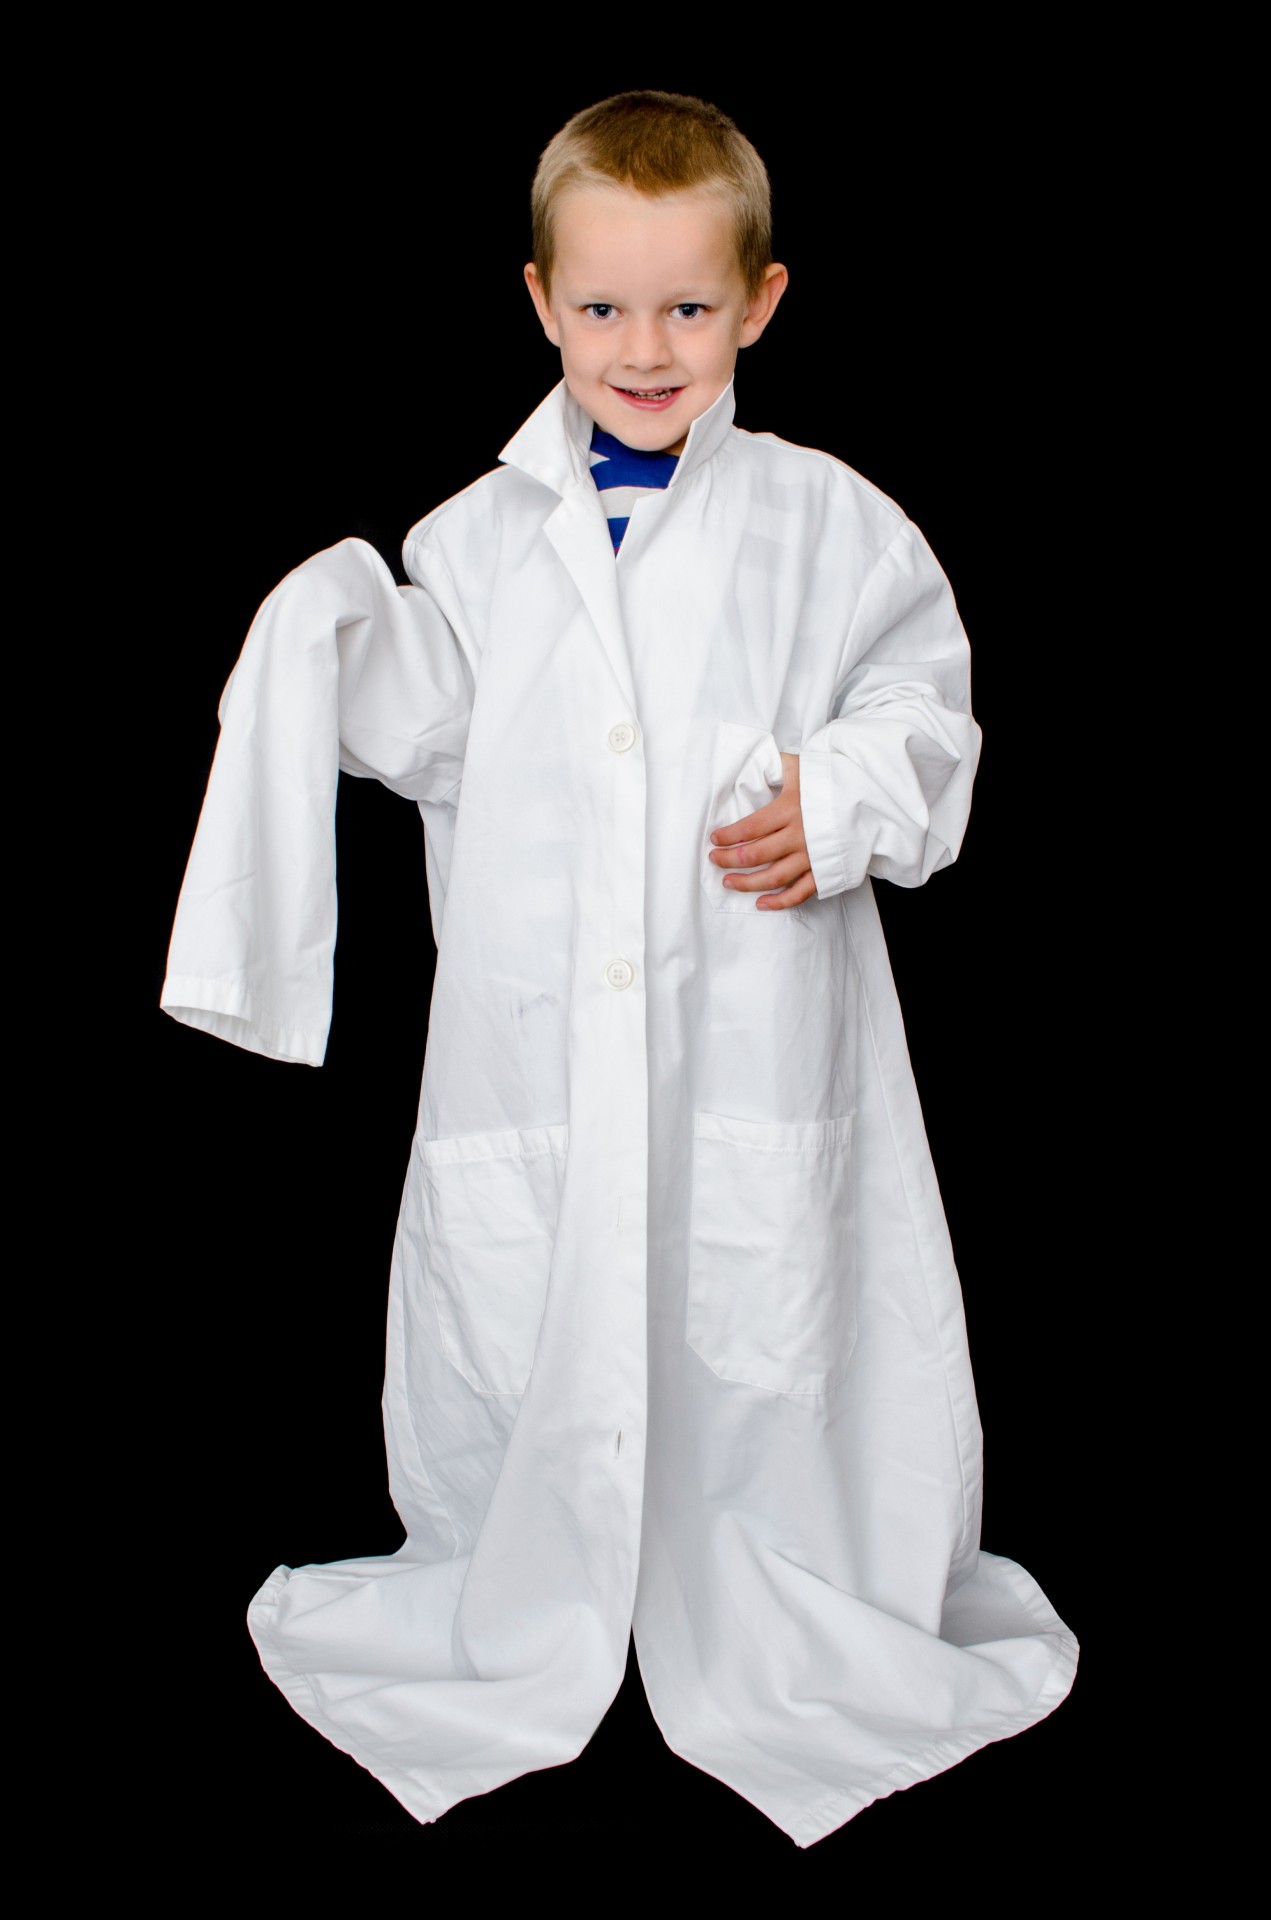 Kind im weißen Arzt Mantel